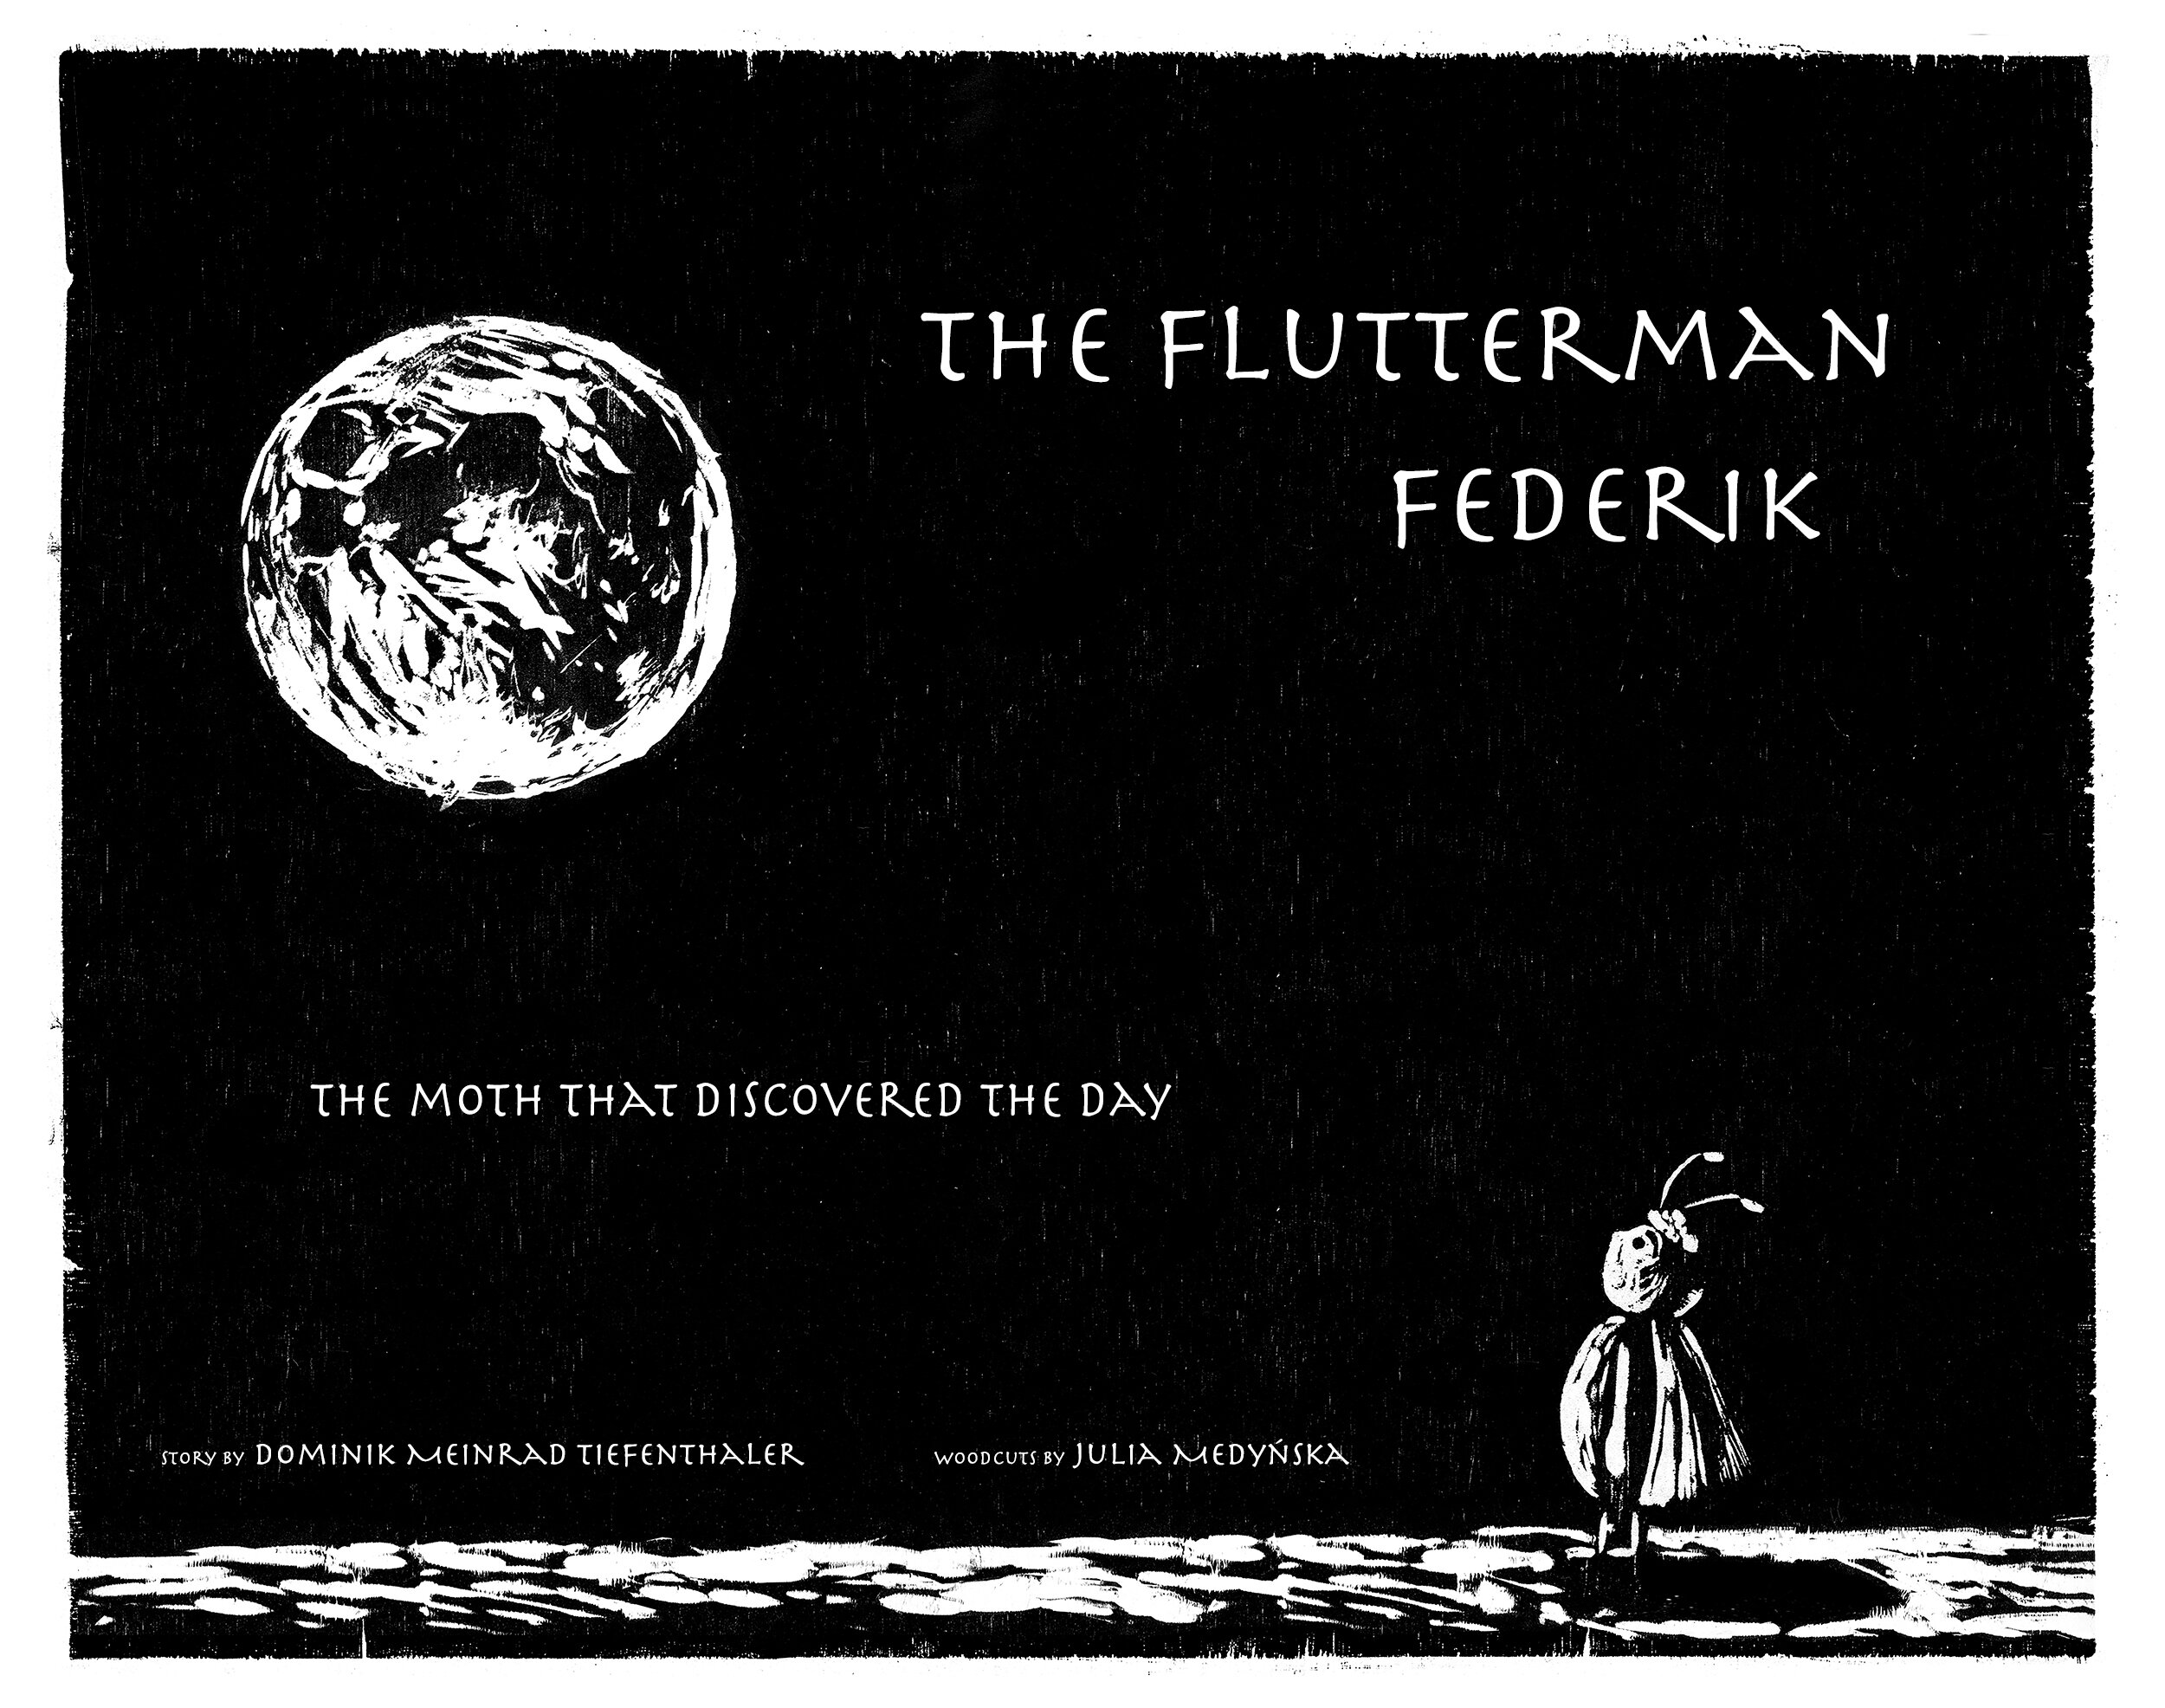 THE-FLUTTERMAN-FEDERIK_Tiefenthaler_Cover.jpg